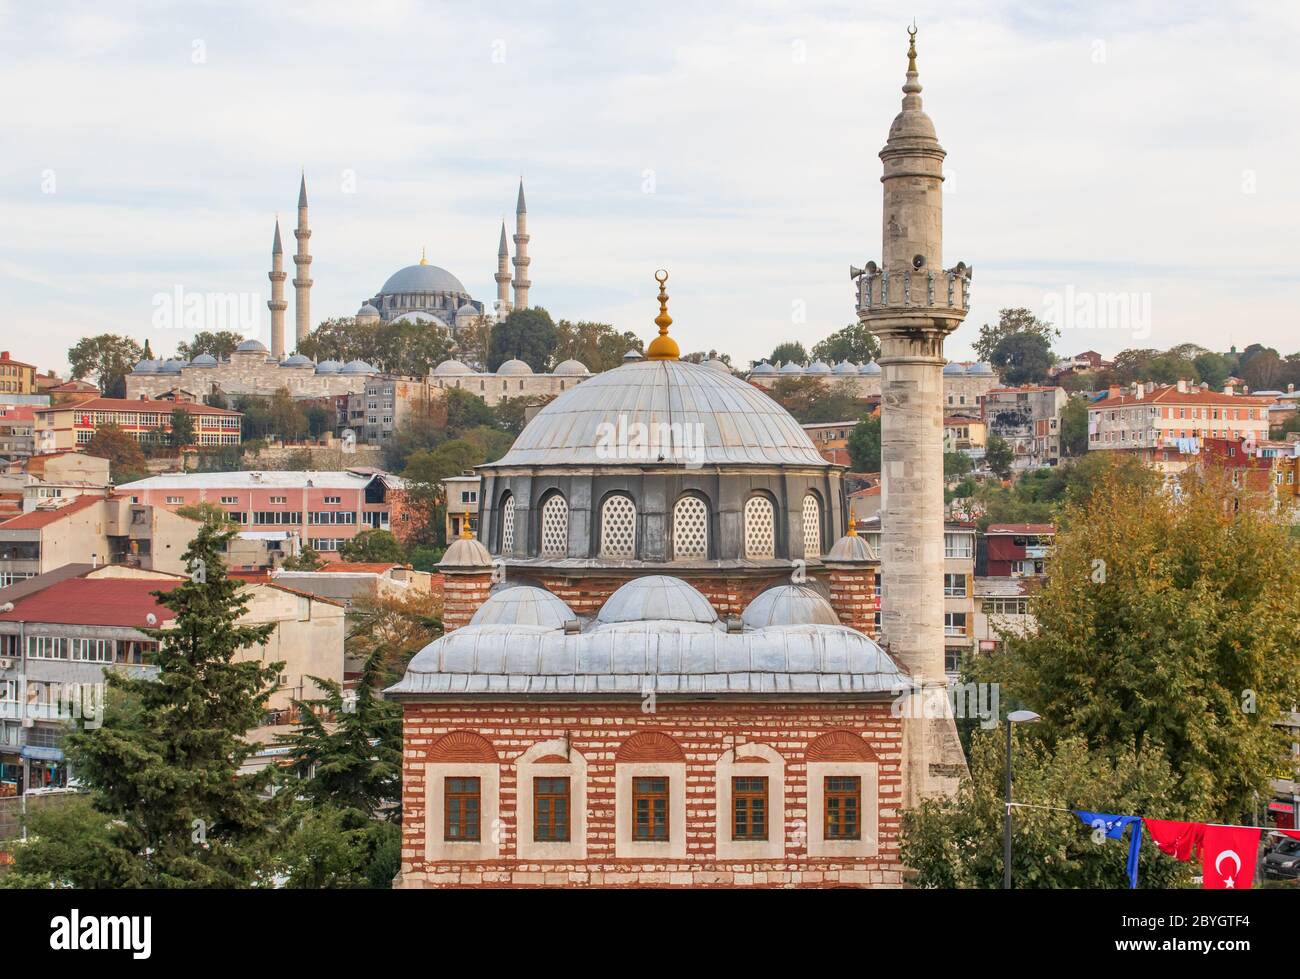 Pays à forte majorité musulmane, la Turquie a des mosquées à tous les coins de la rue. Ici en particulier une des nombreuses mosquées merveilleuses d'Istanbul Banque D'Images